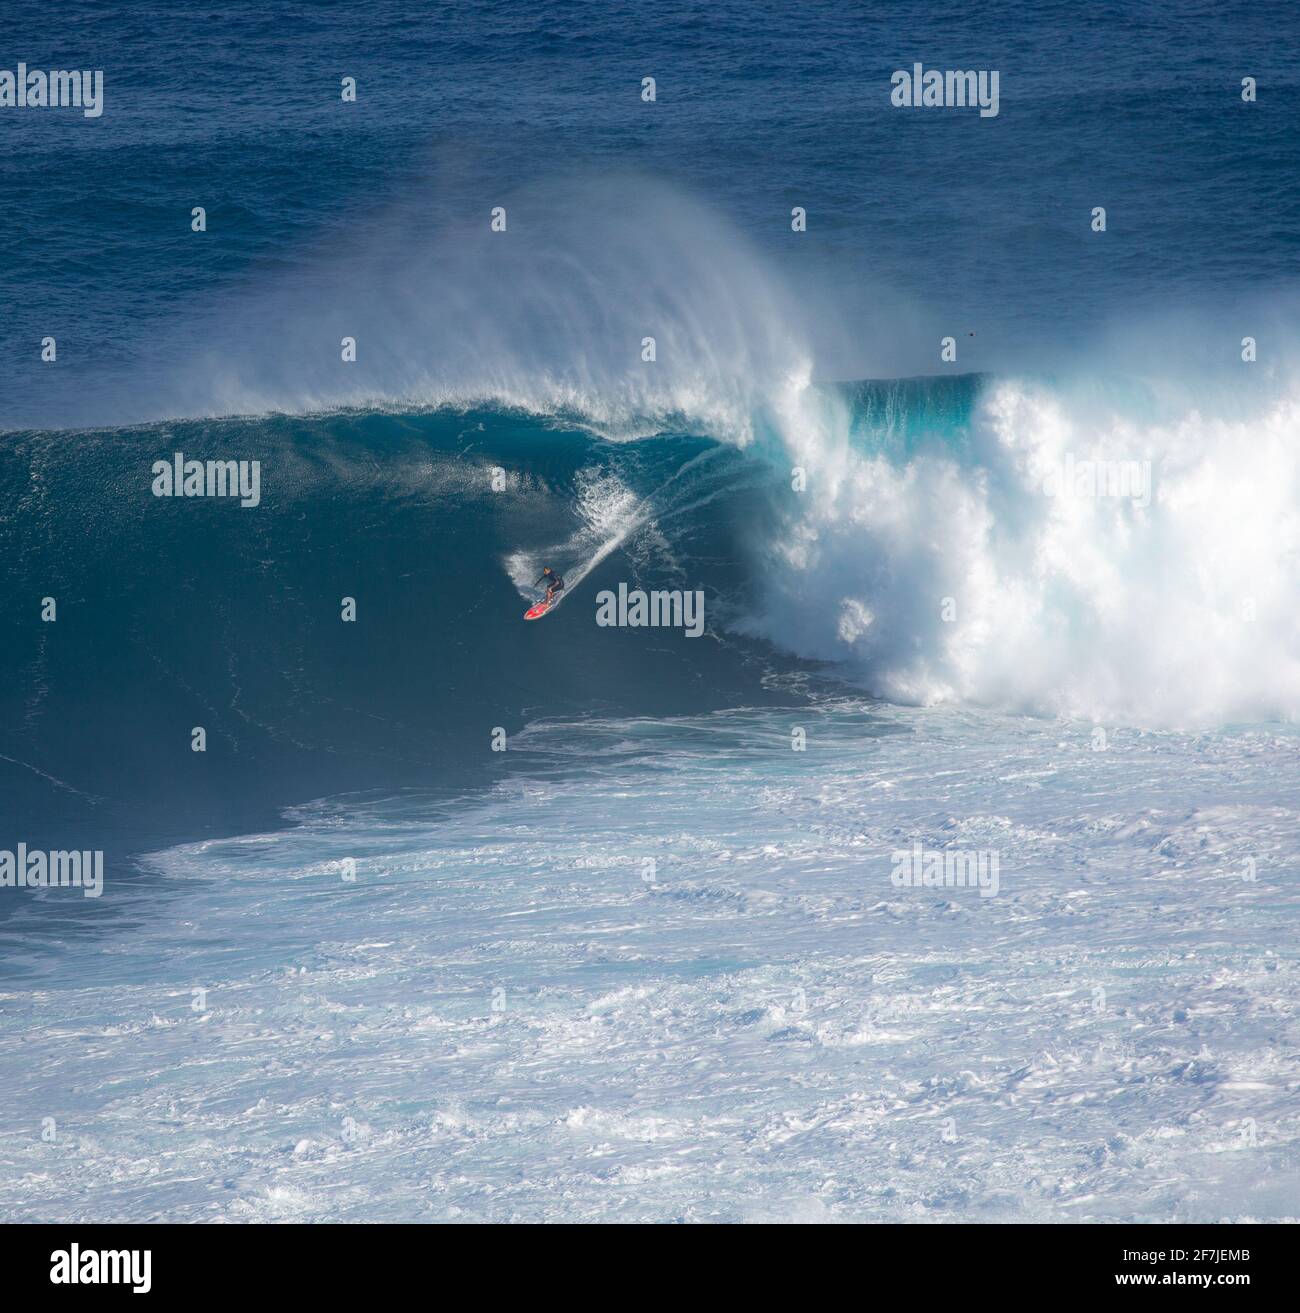 Un surfista cavalca un'onda gigante durante la pausa surf Conosciuto come Jaws o Peahi sull'isola di Maui durante una delle ultime grandi ondate del 2020 Foto Stock